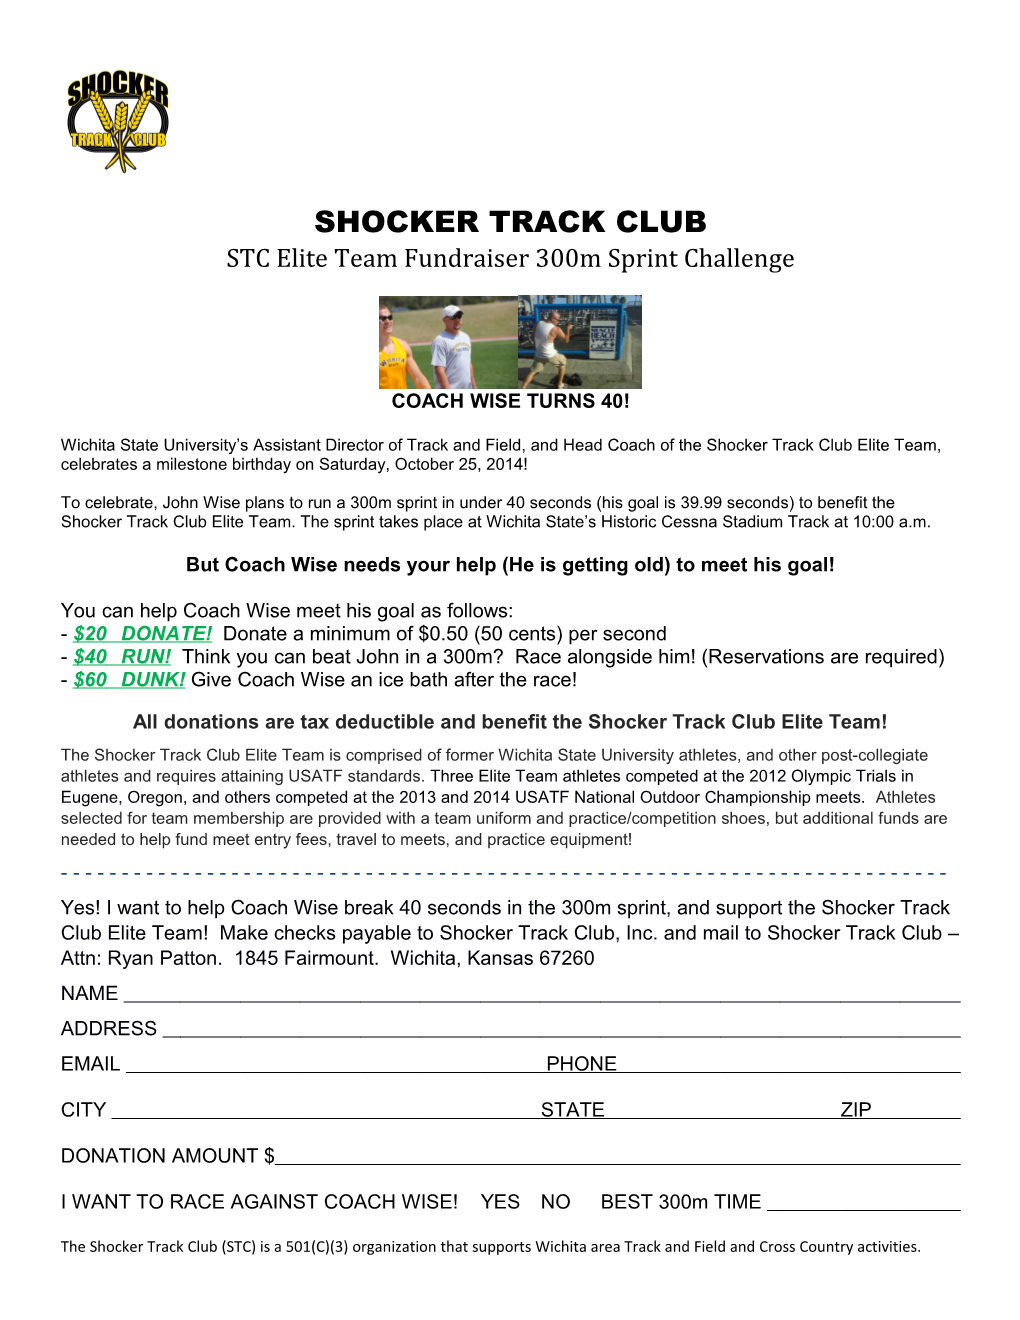 STC Elite Team Fundraiser 300M Sprint Challenge